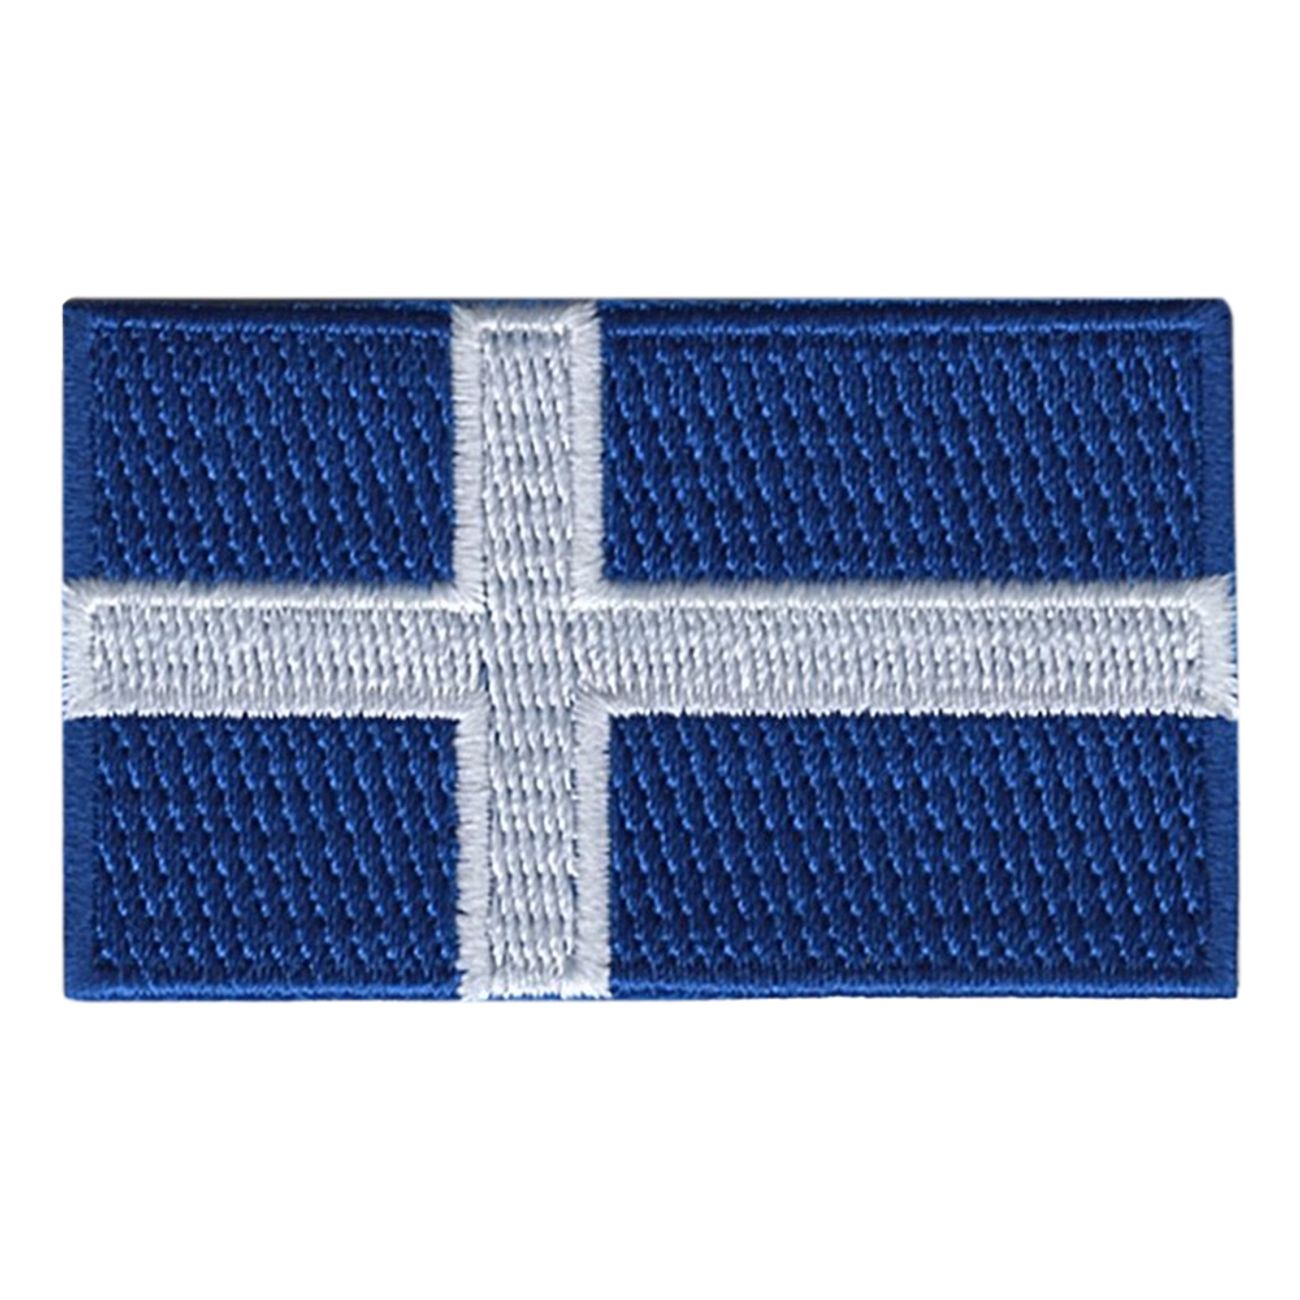 flagga-shetland-tygmarke-100649-1